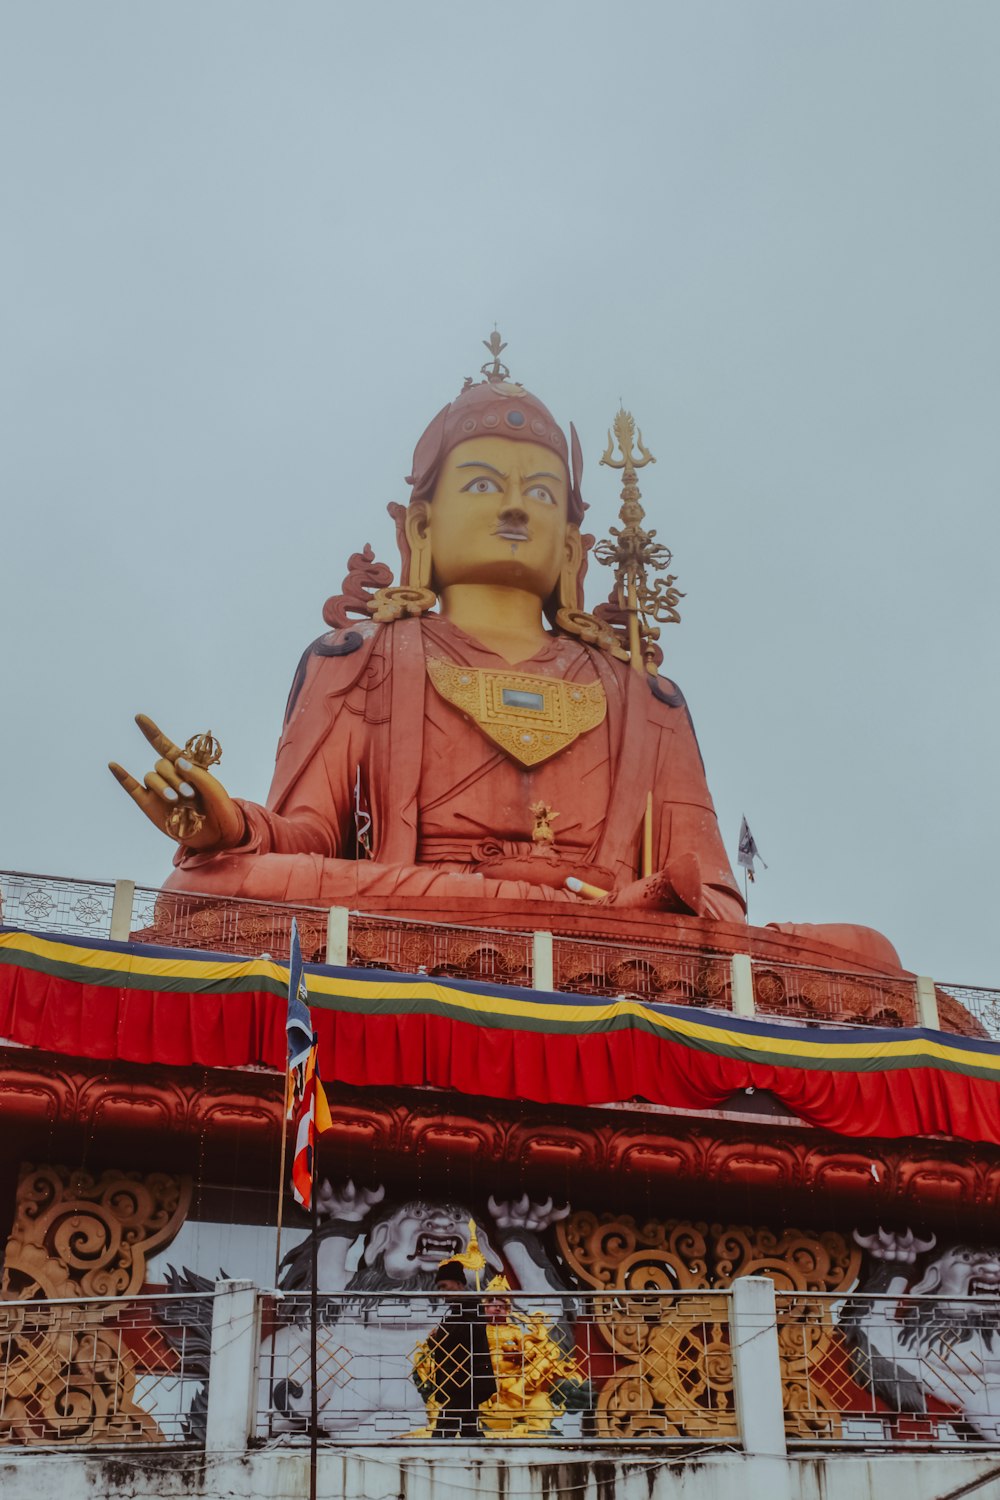 hindu deity statue under white sky during daytime